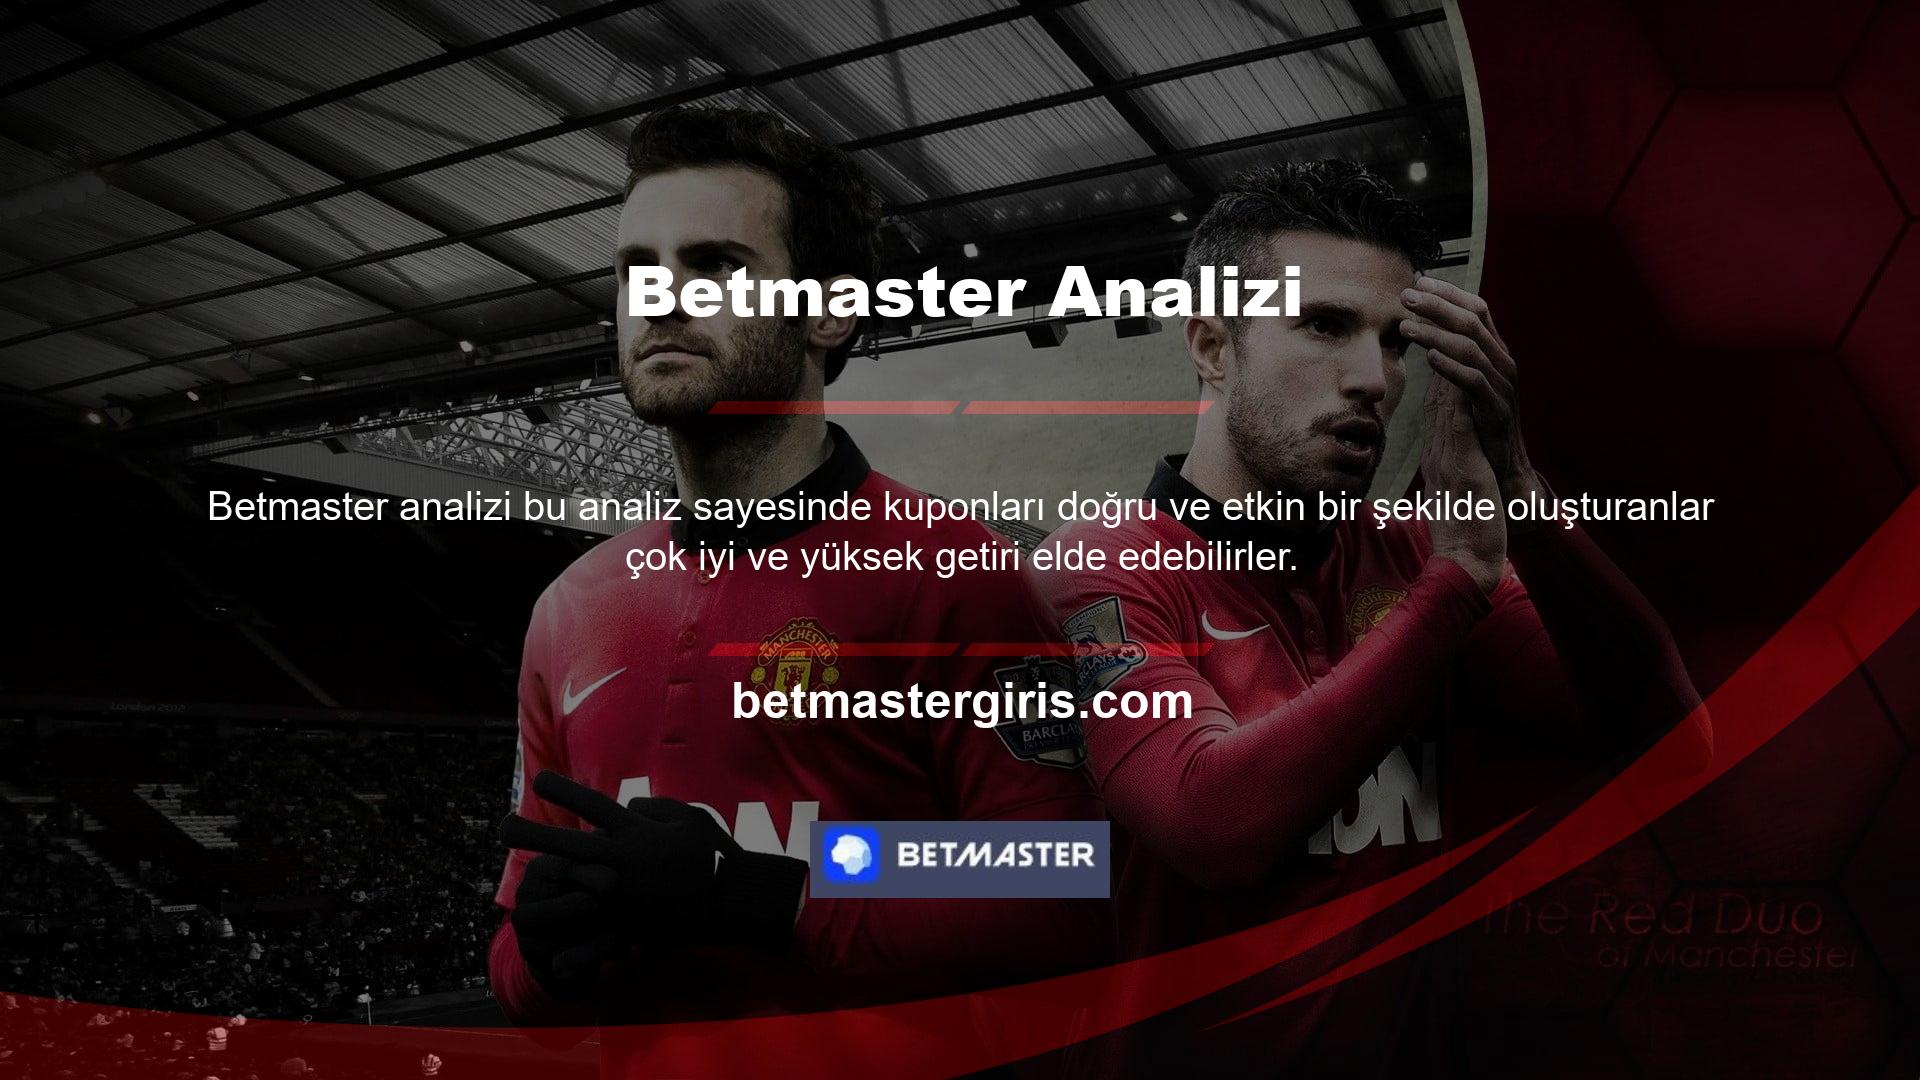 Betmaster canlı maç izleme özelliği, sitedeki tüm uydu kanallarının aktarımını gösterir